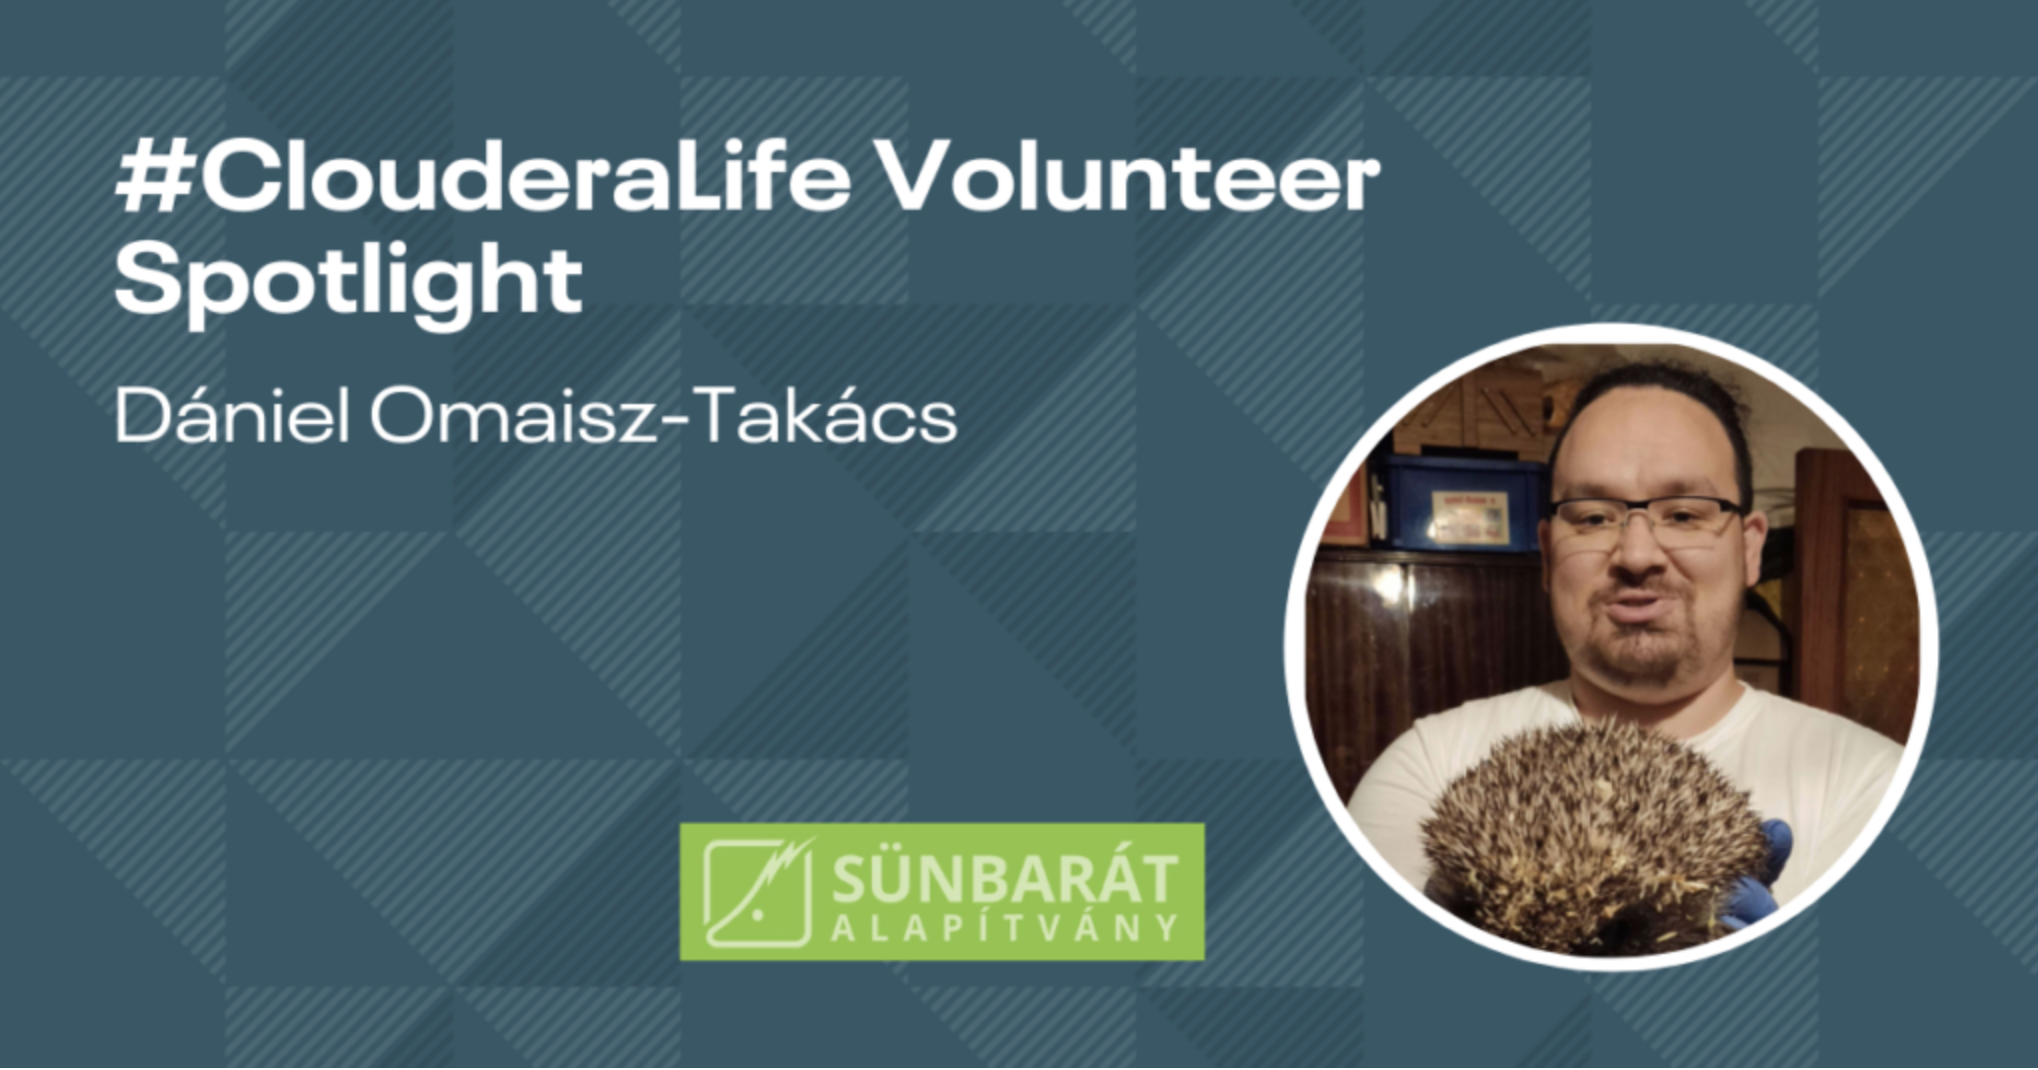 #Clouderalife Volunteer Highlight: Dániel Omaisz-Takács